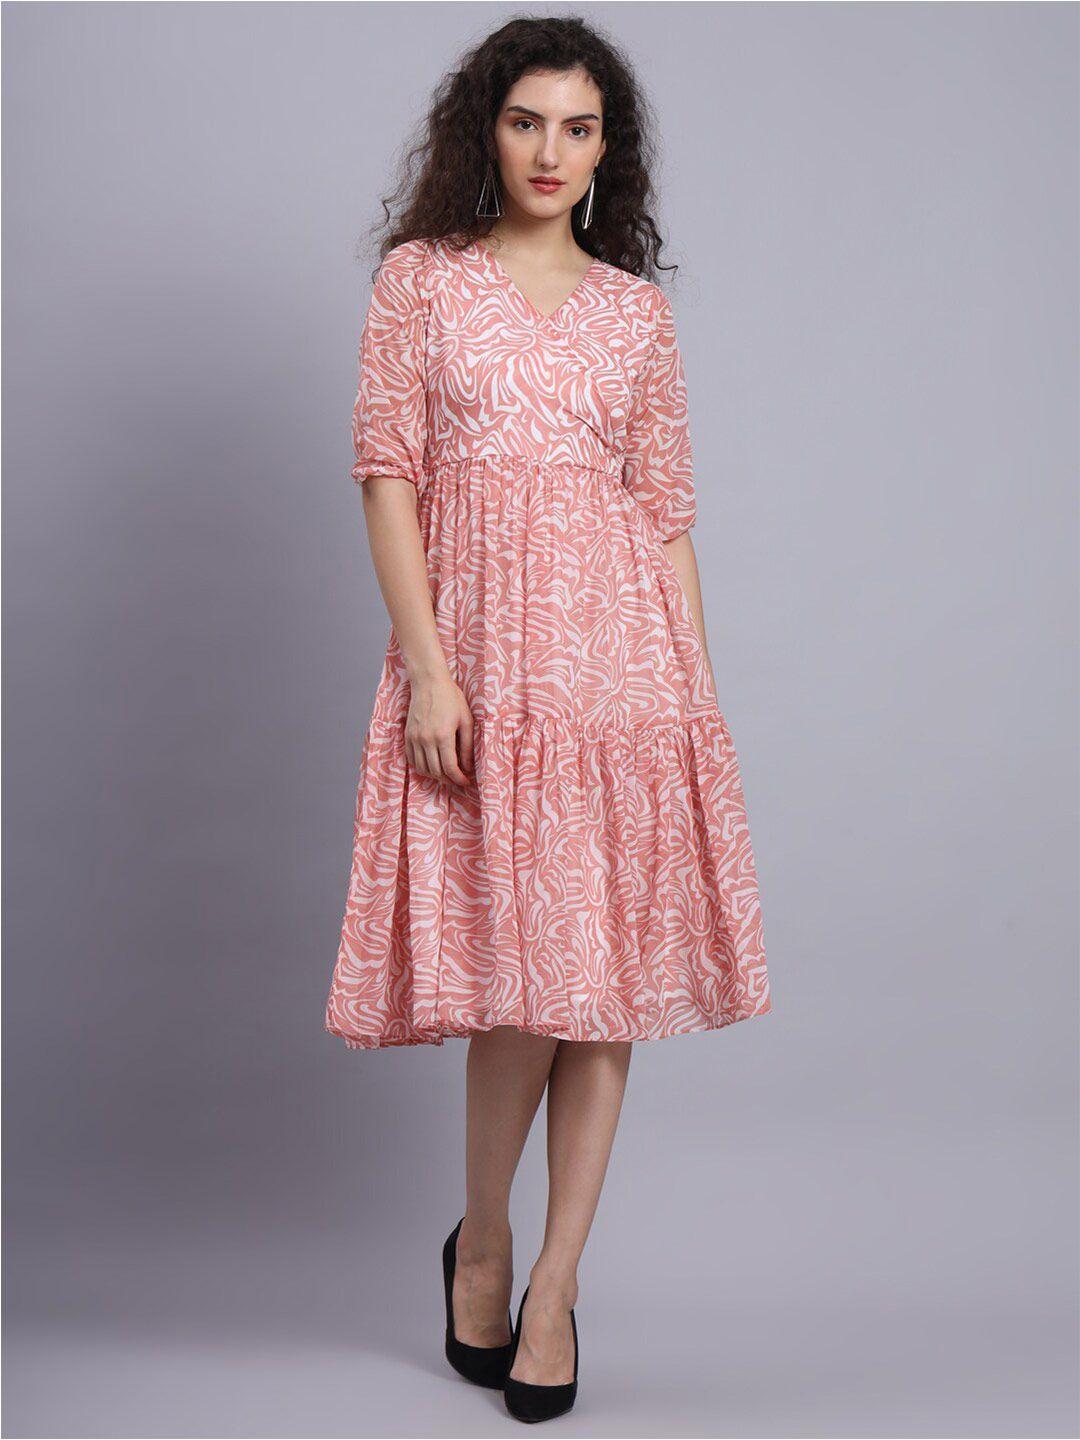 fabdyor pink georgette dress